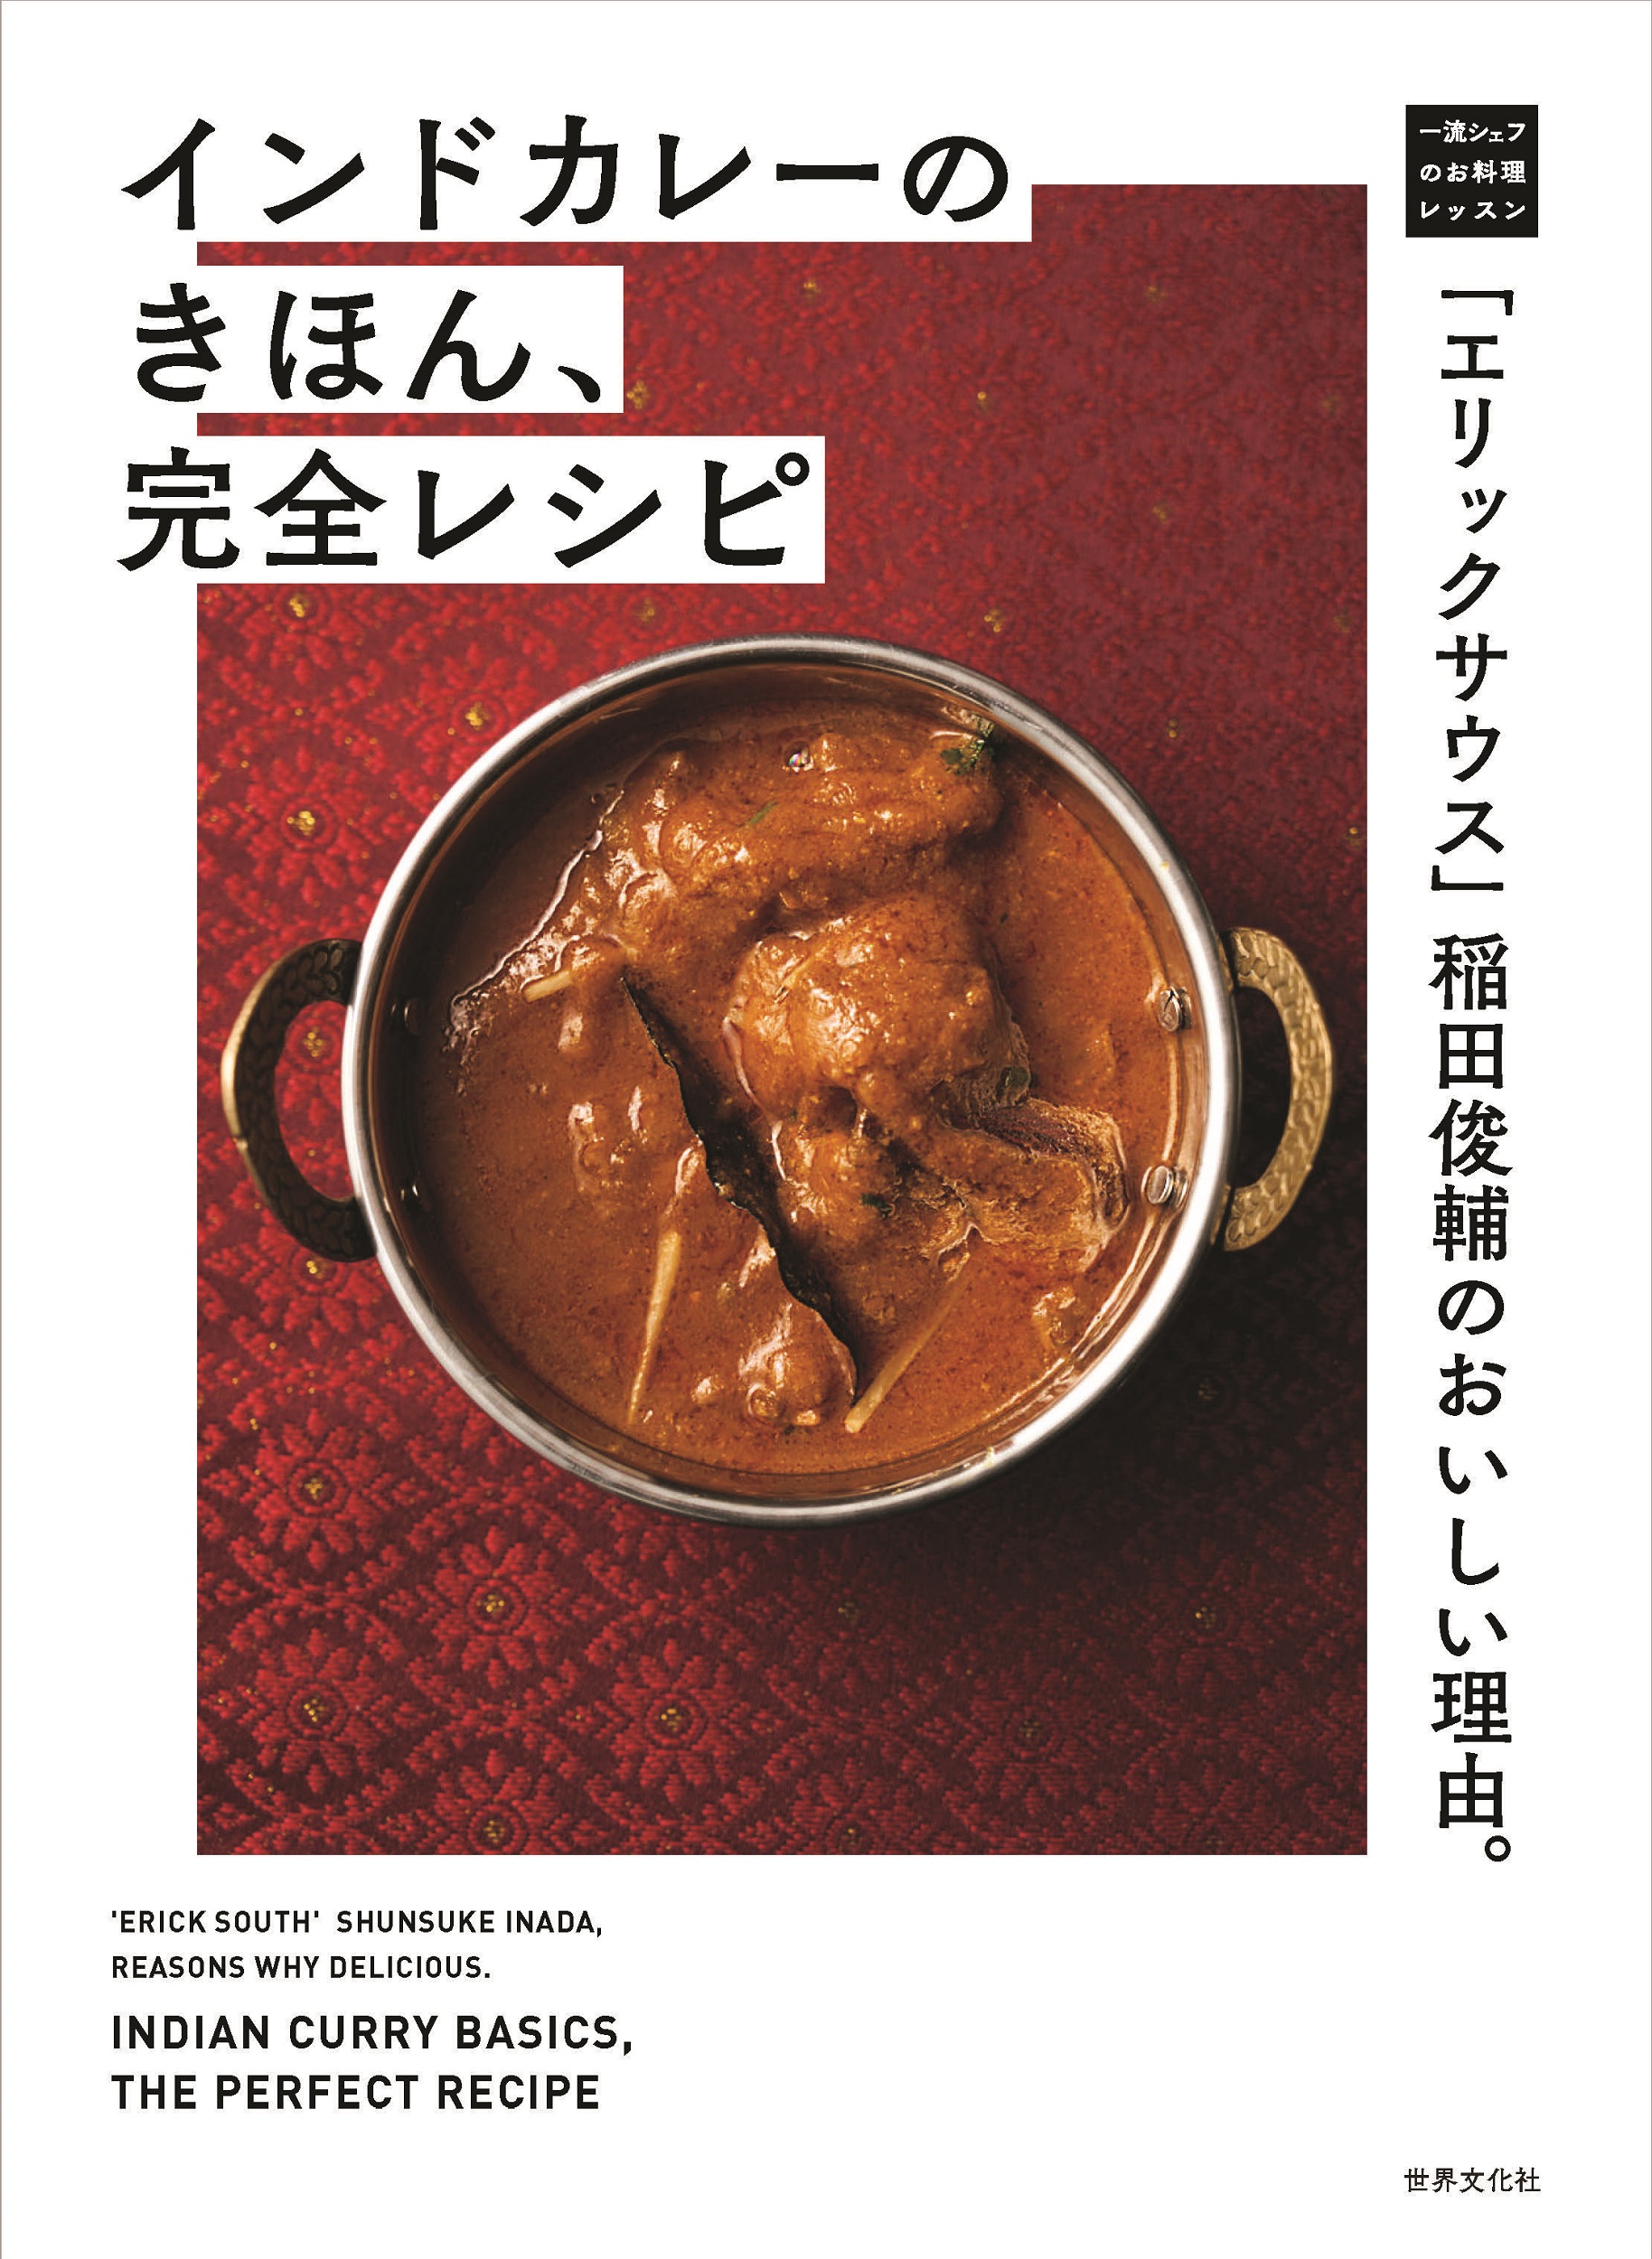 「エリックサウス」稲田俊輔のおいしい理由。インドカレーのきほん、完全レシピの商品画像